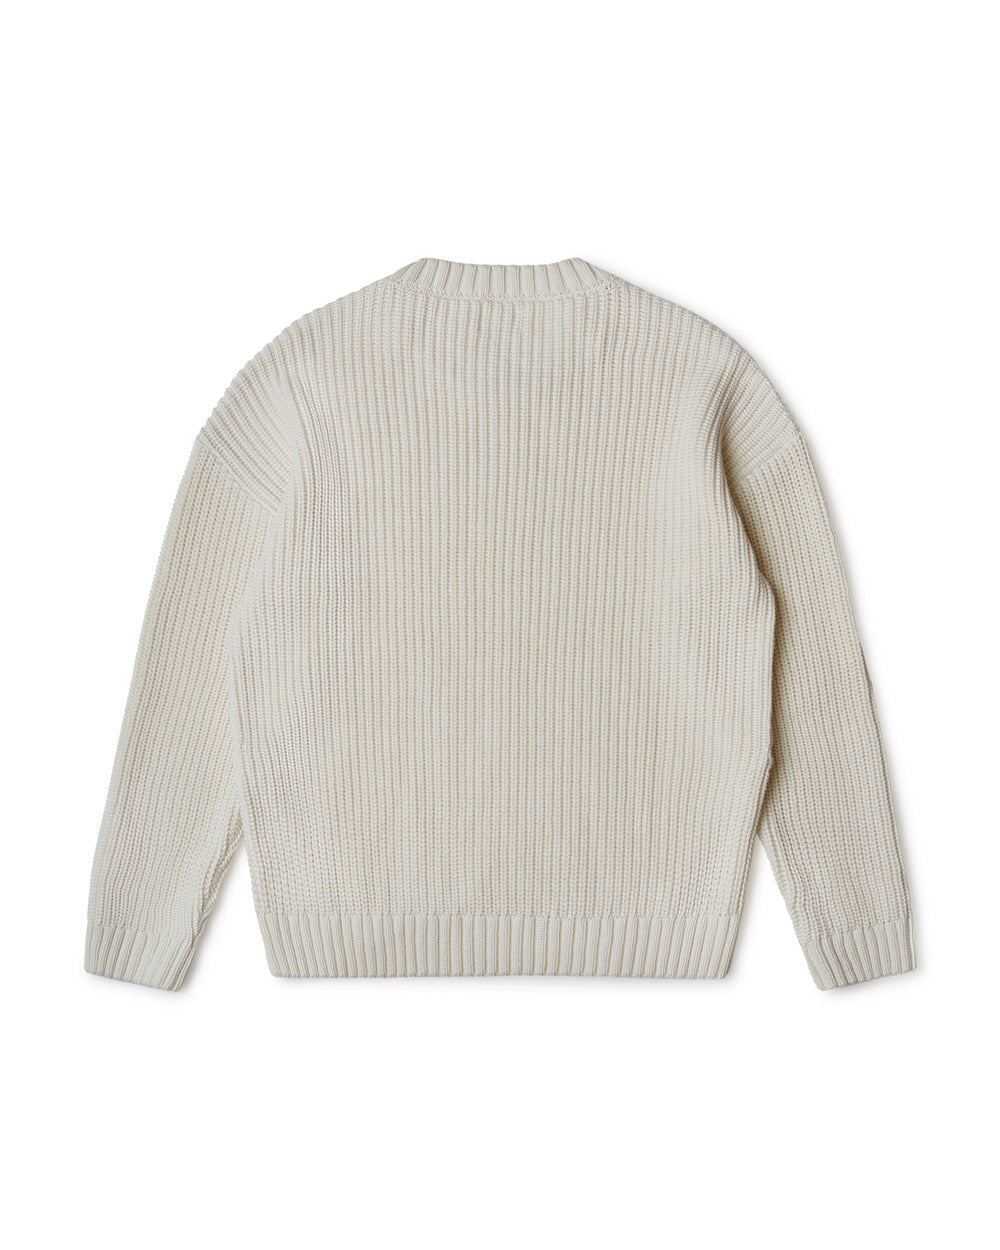 White, ecru knitted sweater made of organic cotton by Matona